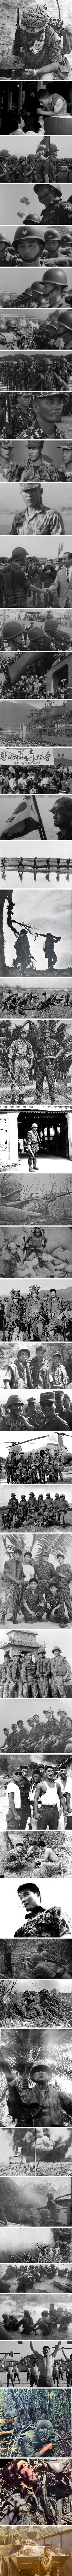 첫 파병... 한국 병사들이 받았던 교육...jpg